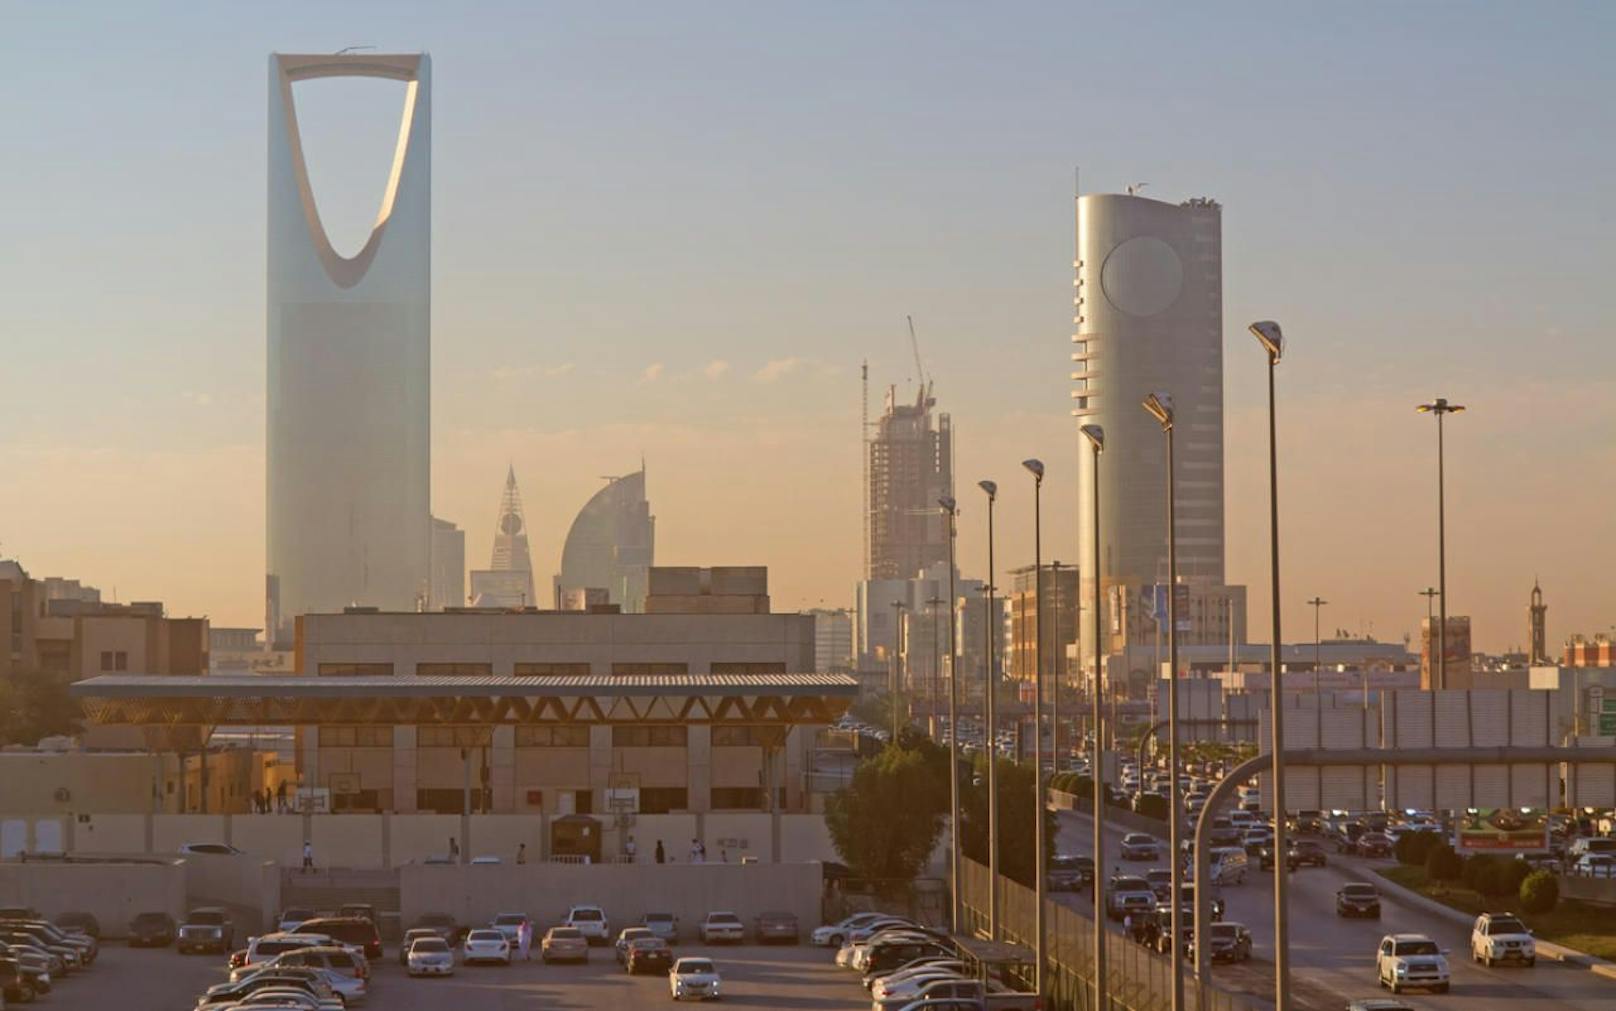 Das Zentrum von Riad (Saudi-Arabien) zu Sonnenaufgang.